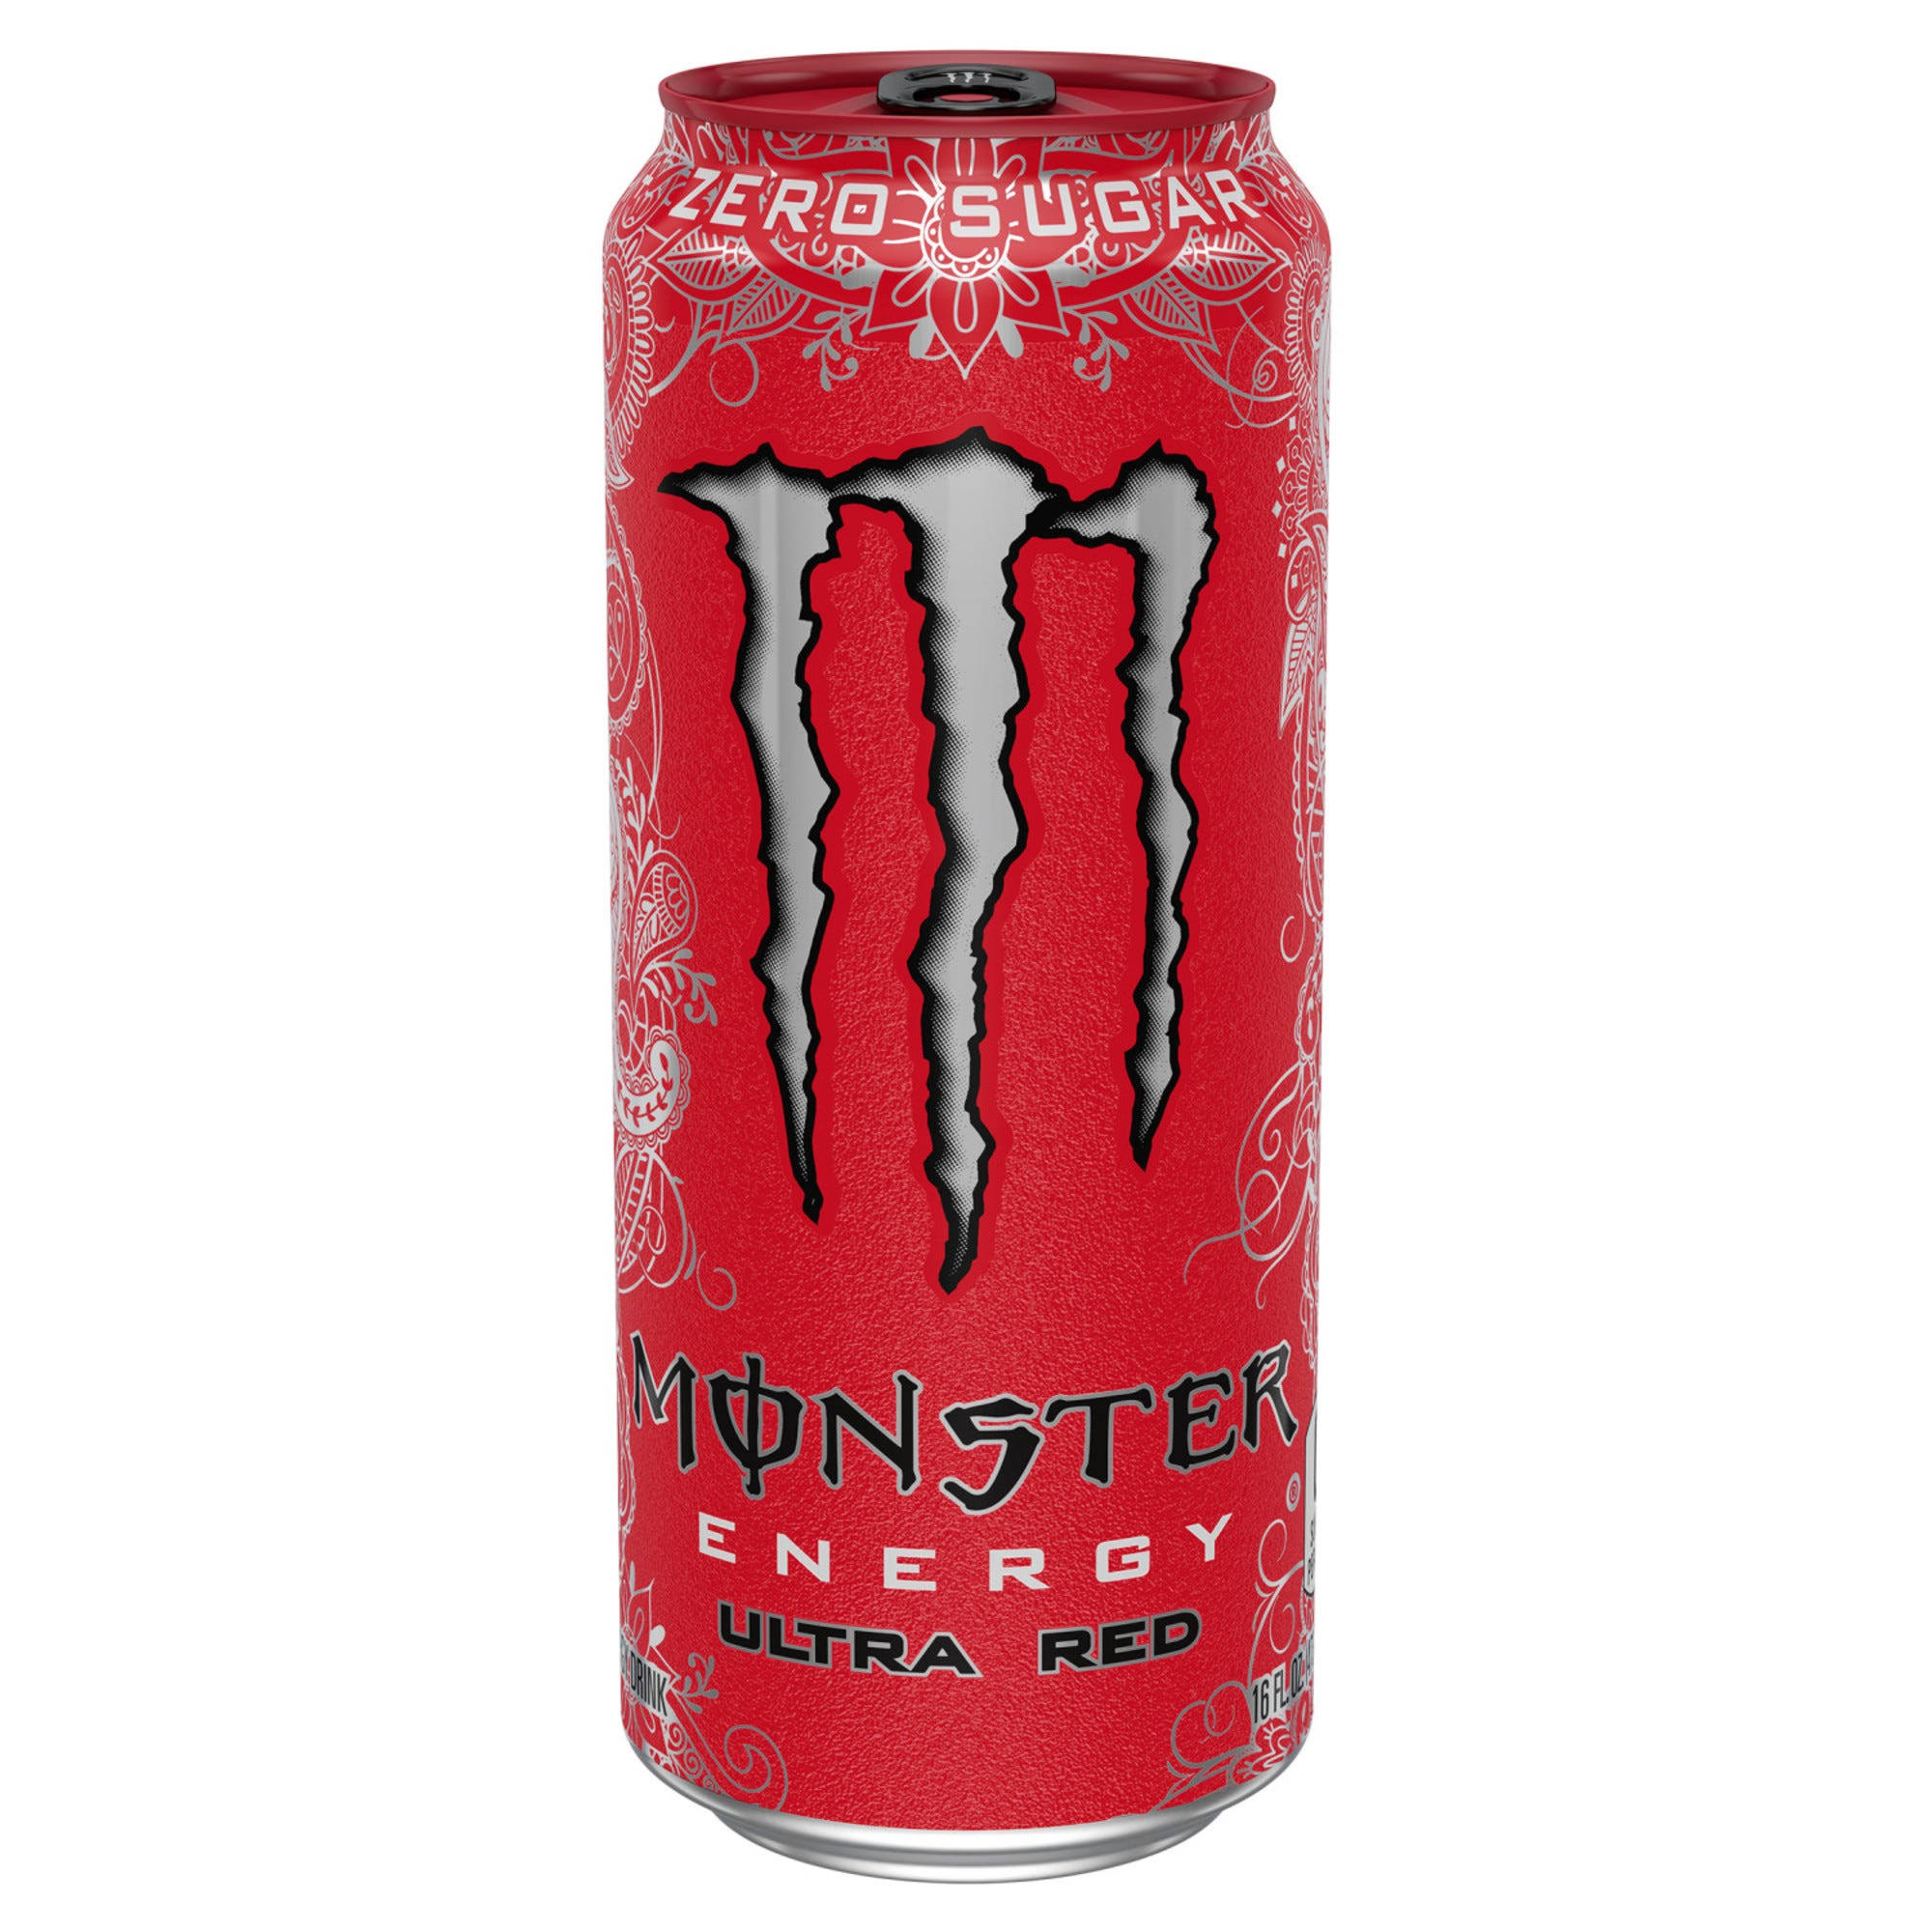 Monster Energy Energy Drink, Ultra Red - 16 fl oz